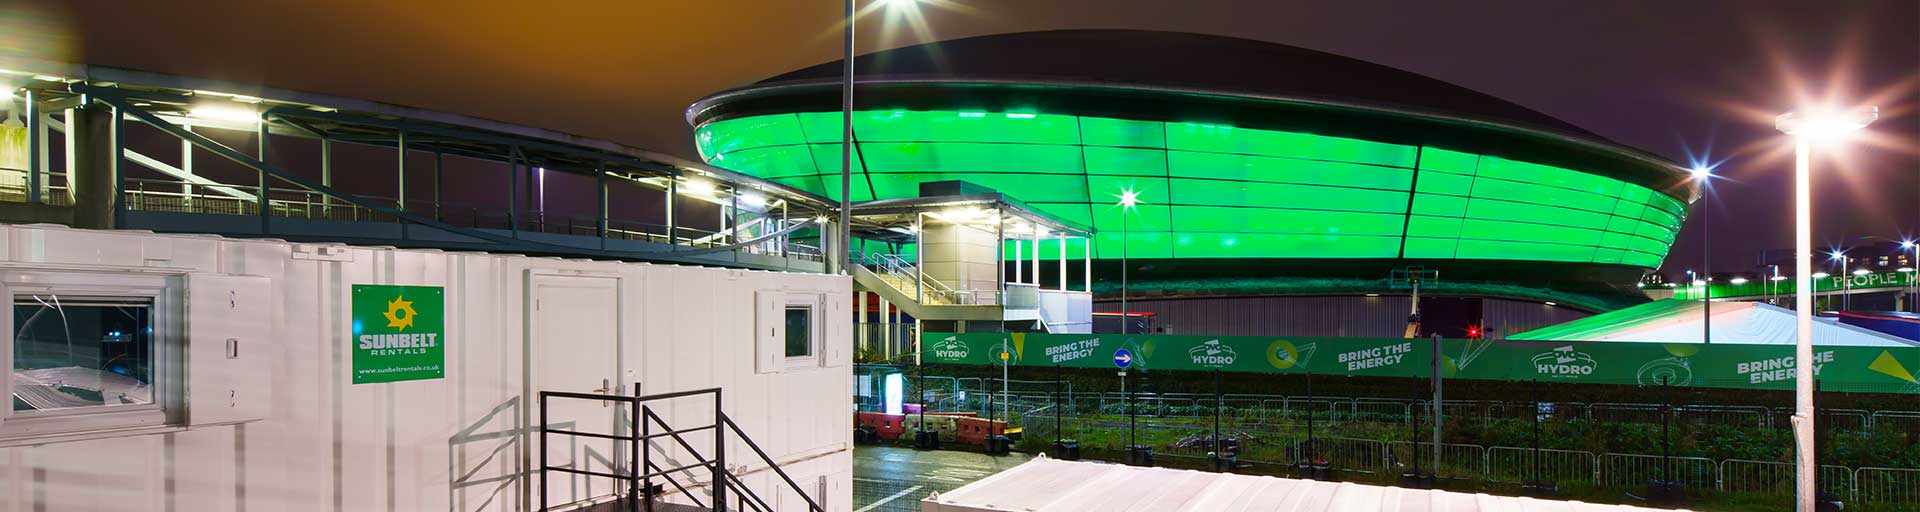 COP26 Glasgow Arena Overlooking Sunbelt Welfare Units